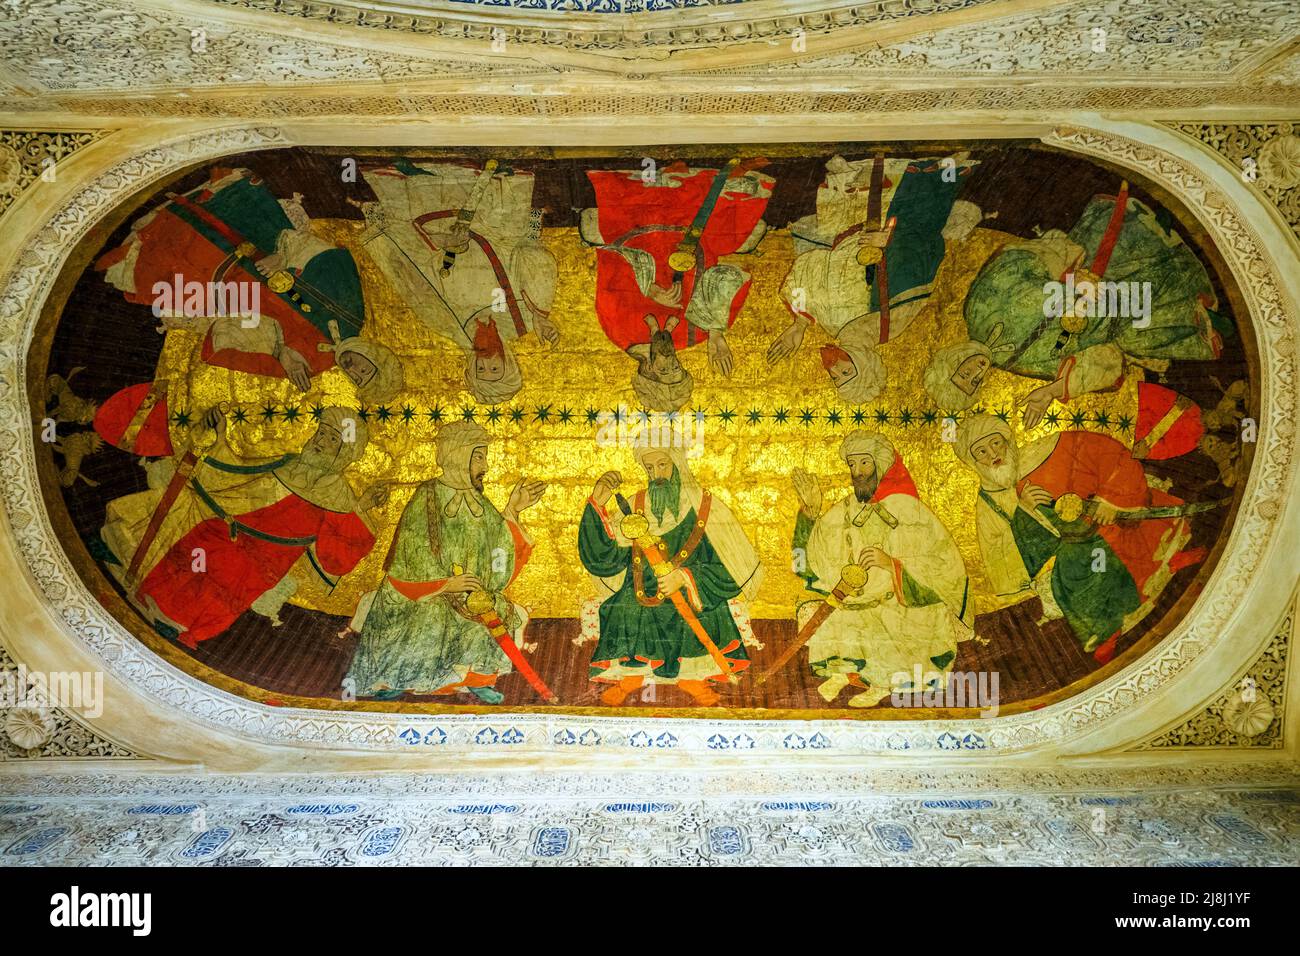 Dipinto sul soffitto di un'alcova nella sala dei re (Sala de los Reyes) nei palazzi reali Nasrid - complesso Alhambra - Granada, Spagna Foto Stock